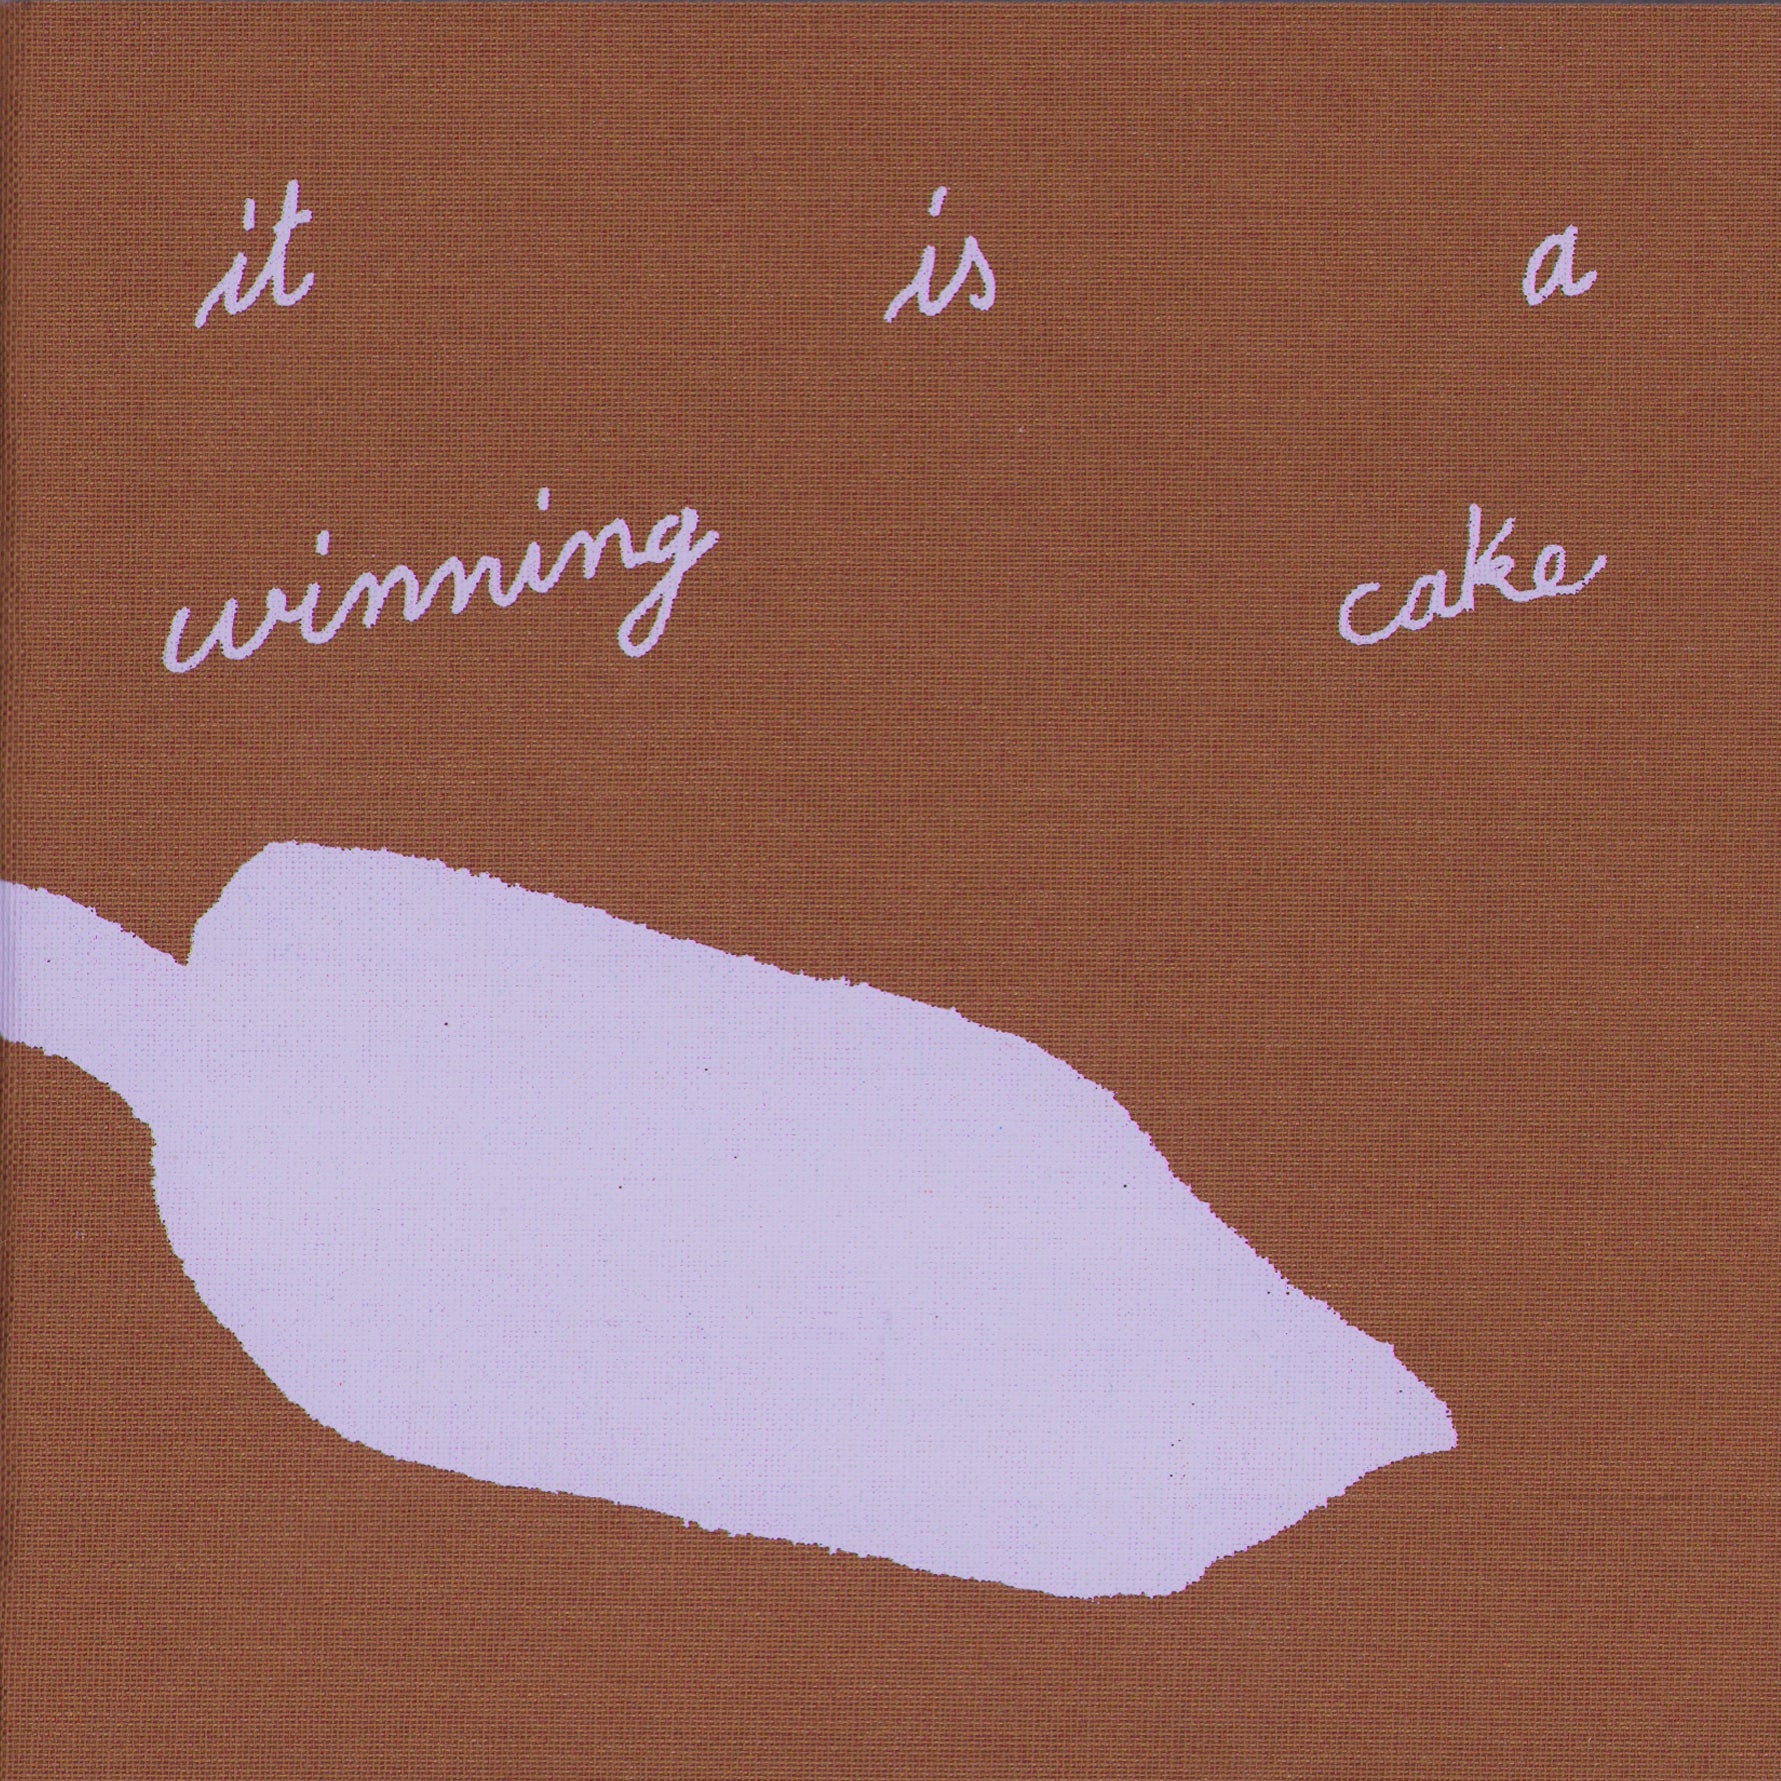 it is a winning cake